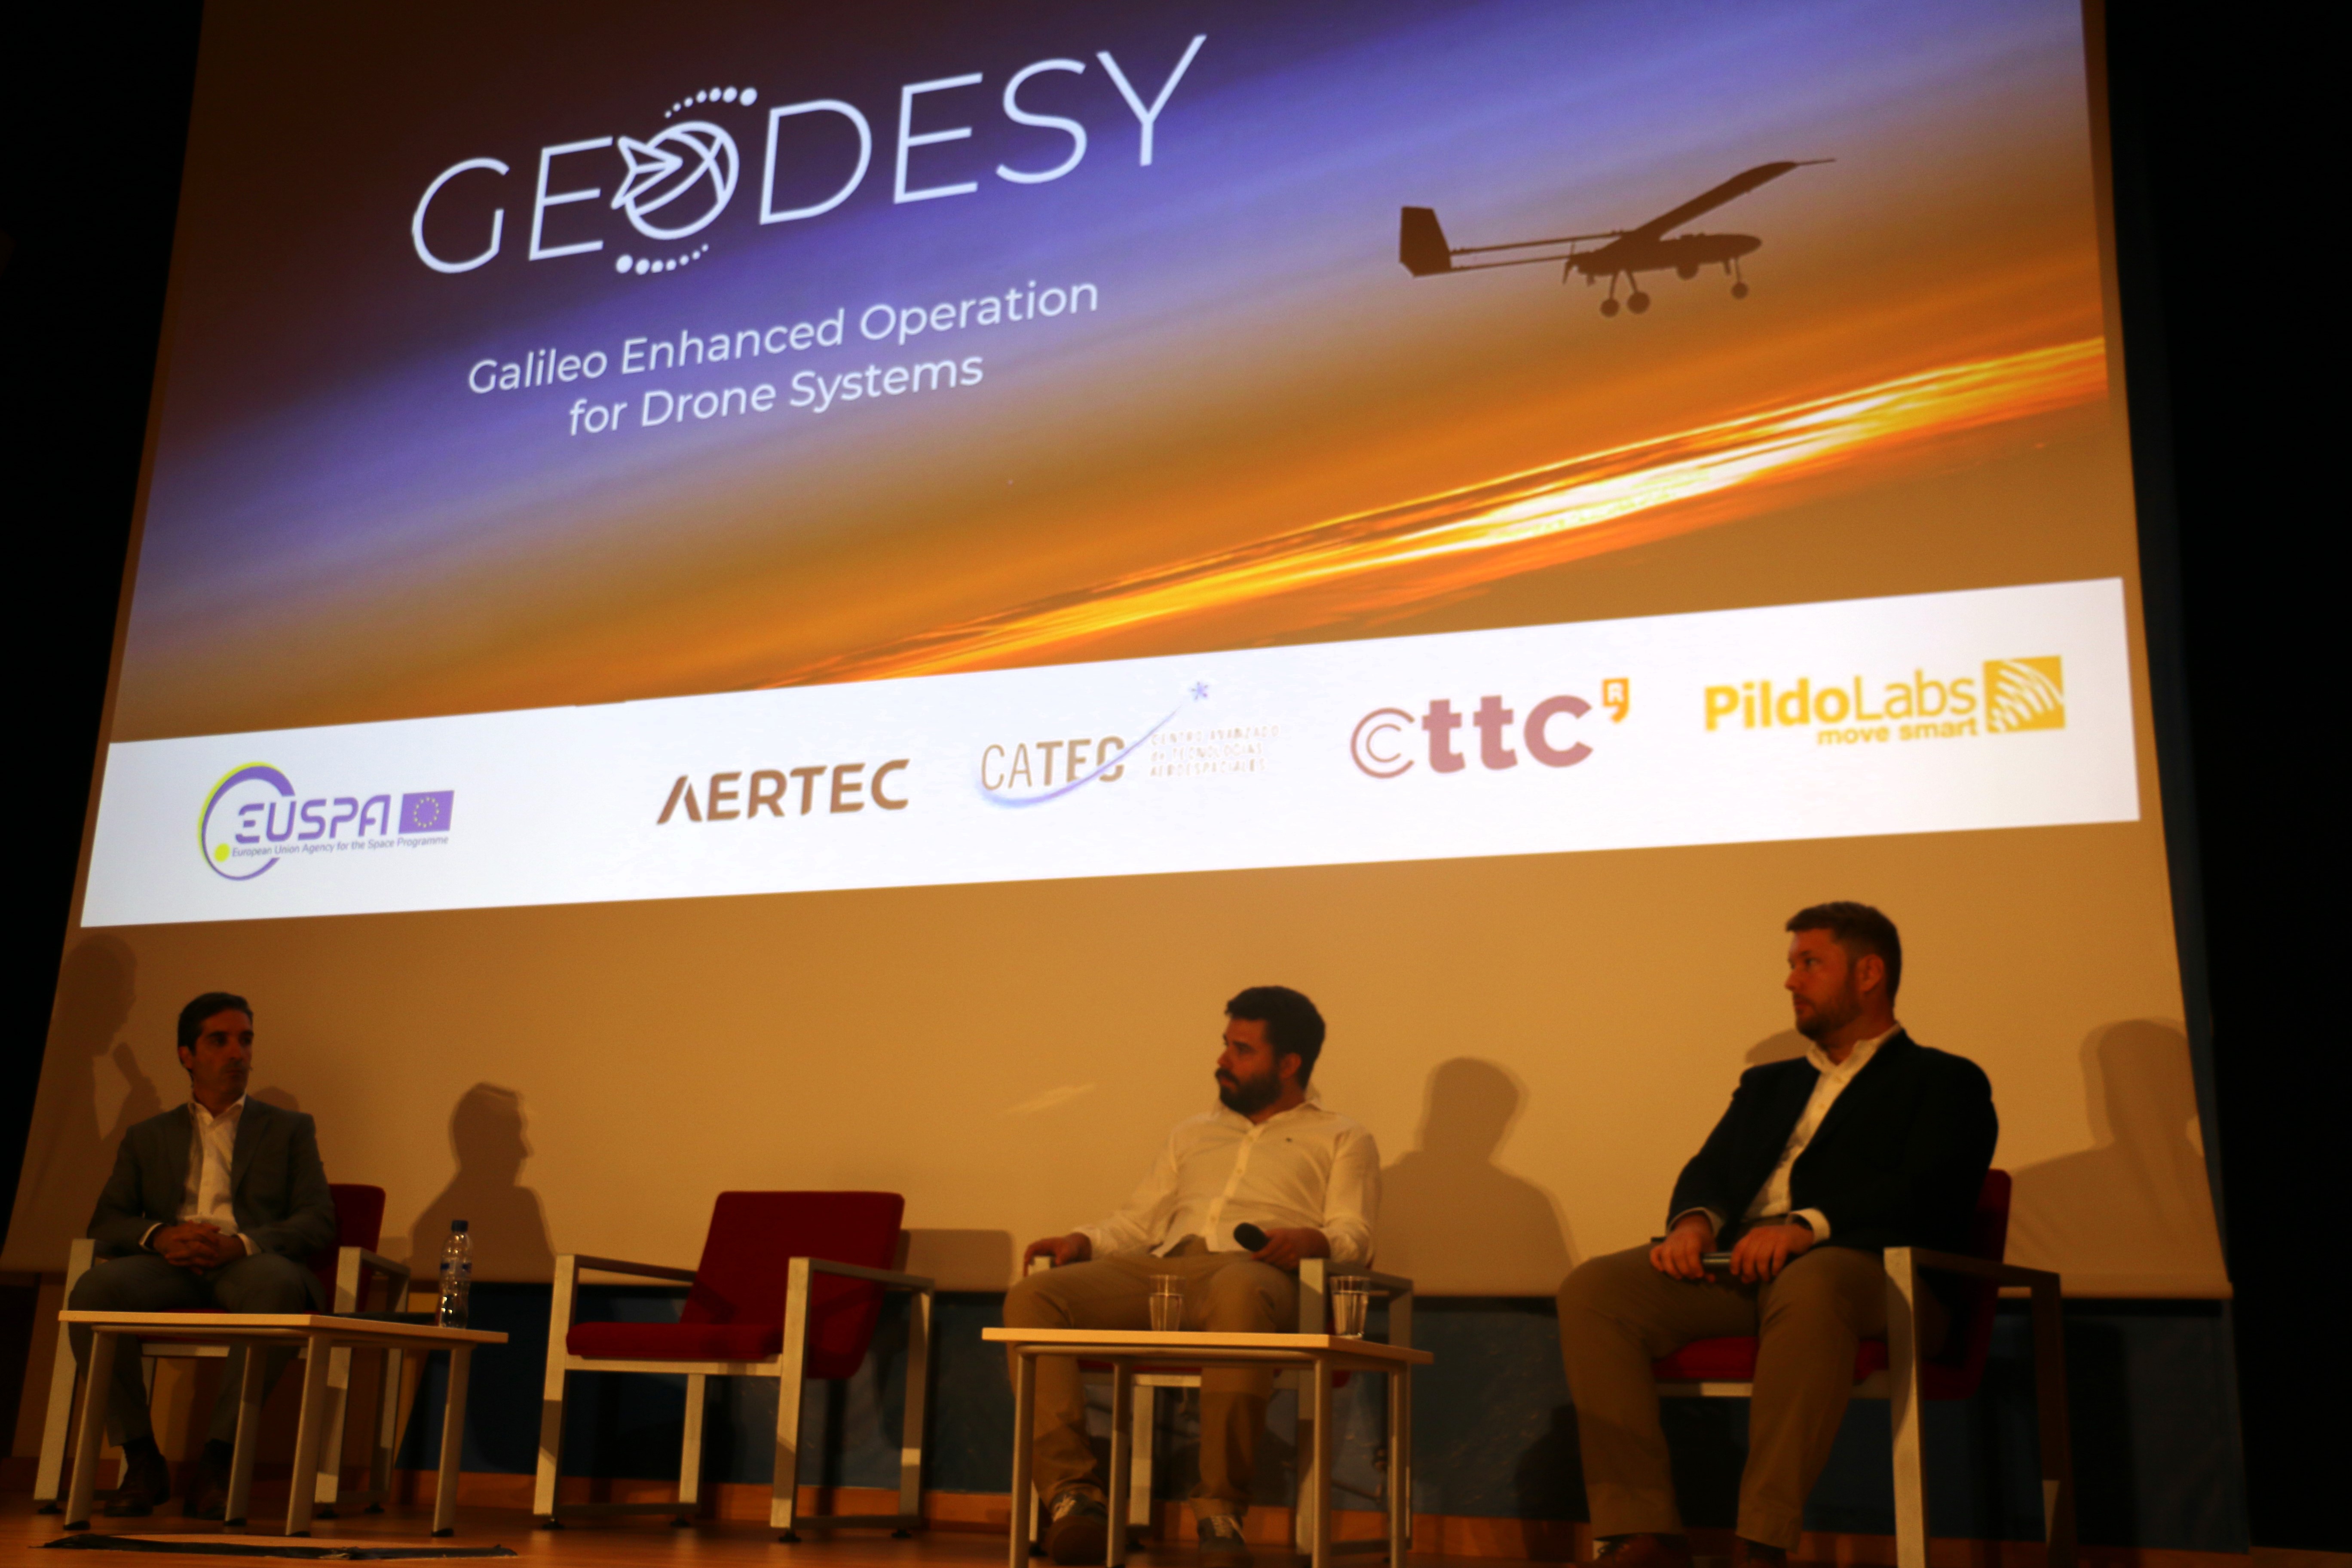 AERTEC presenta GEODESY, un nuevo sistema de navegación basado en un receptor de señal Galileo que validará la seguridad operacional de los drones a baja altitud